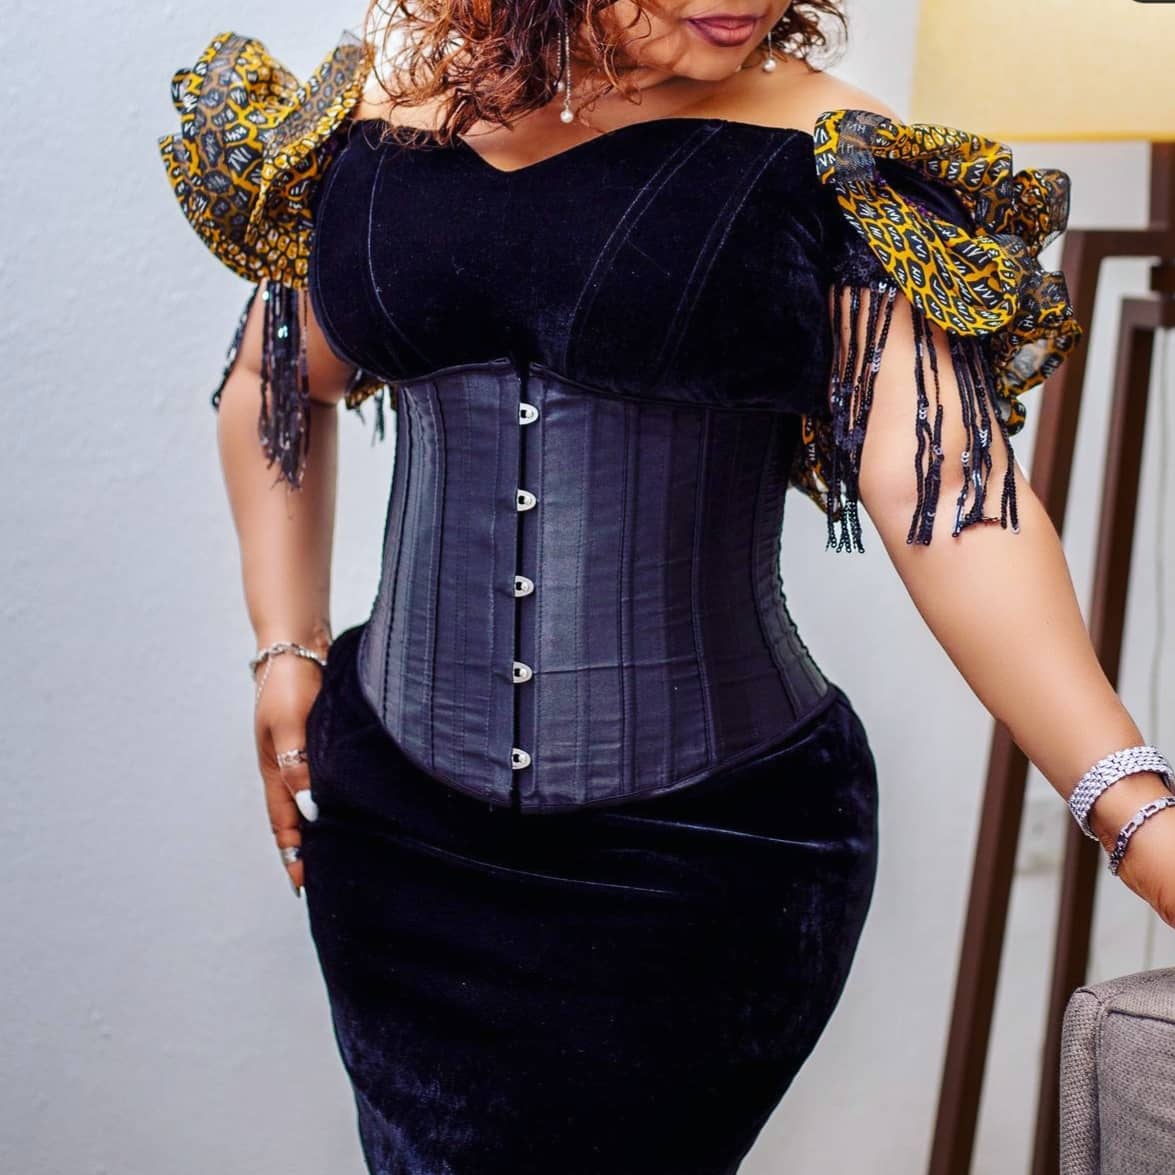 Quality corset